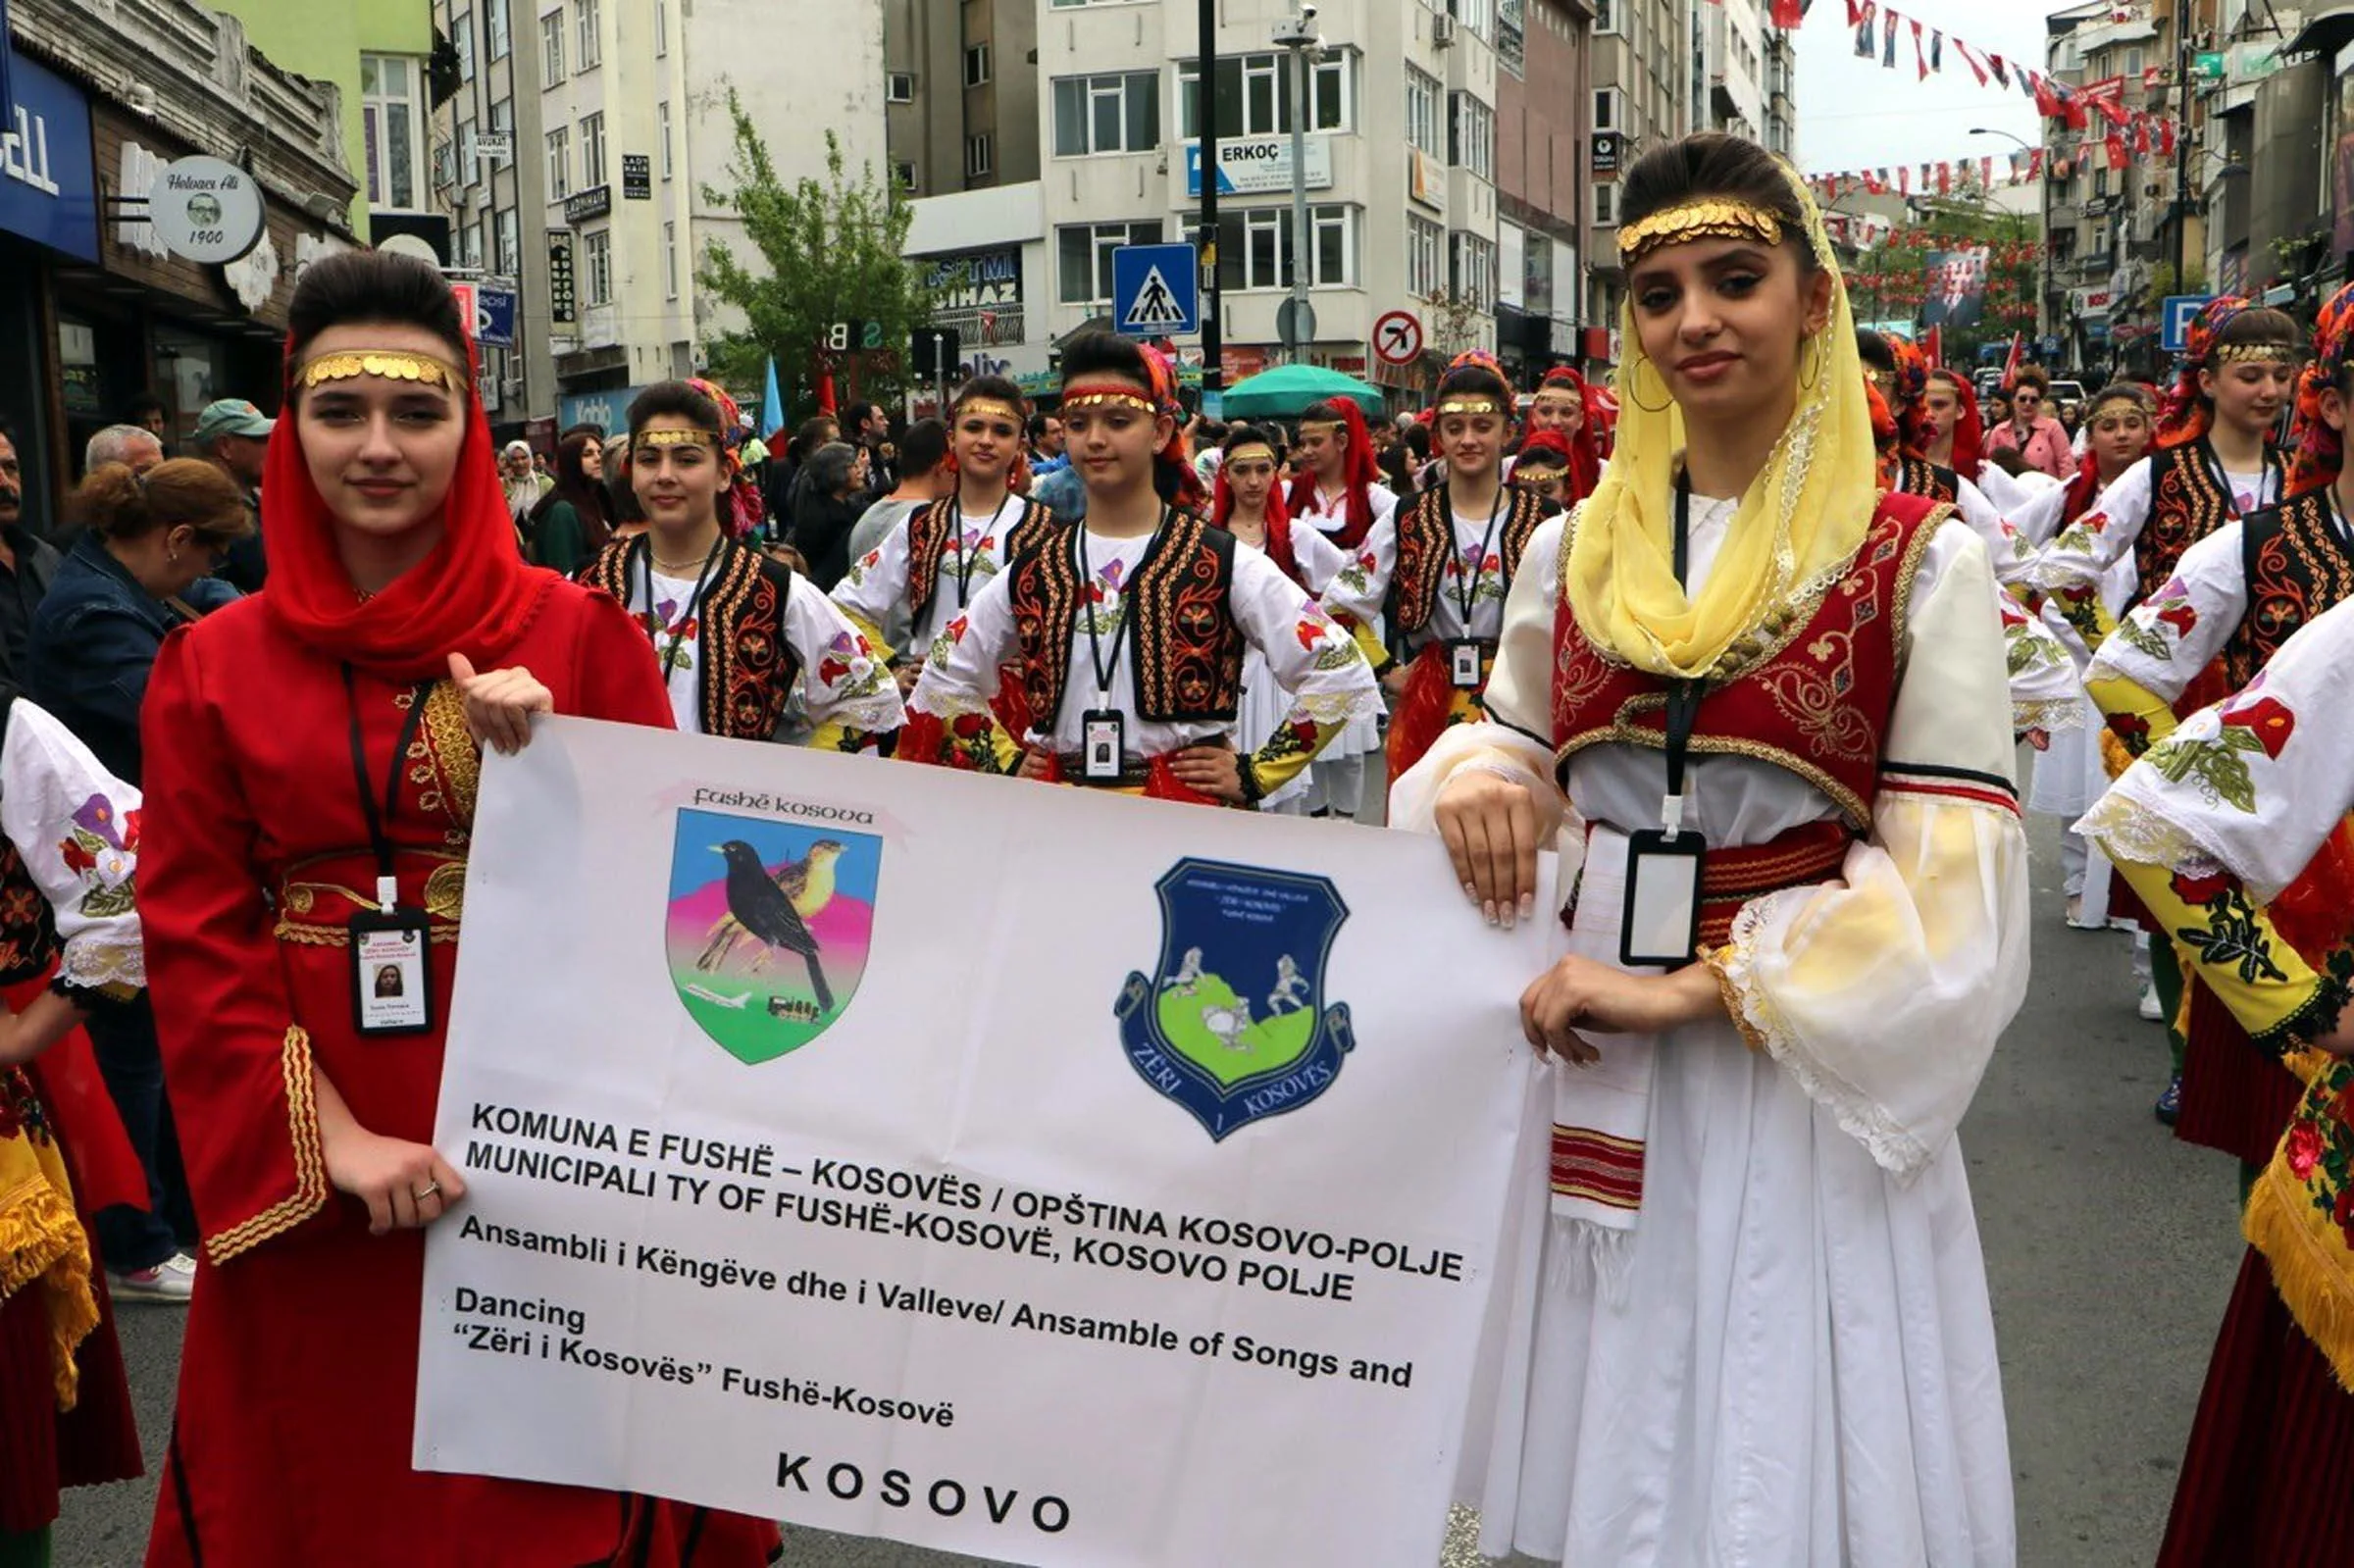 Tekirdağ’da 23 Nisan kutlamaları, Balkan ülkelerinden gelen çocukların katılımıyla başladı